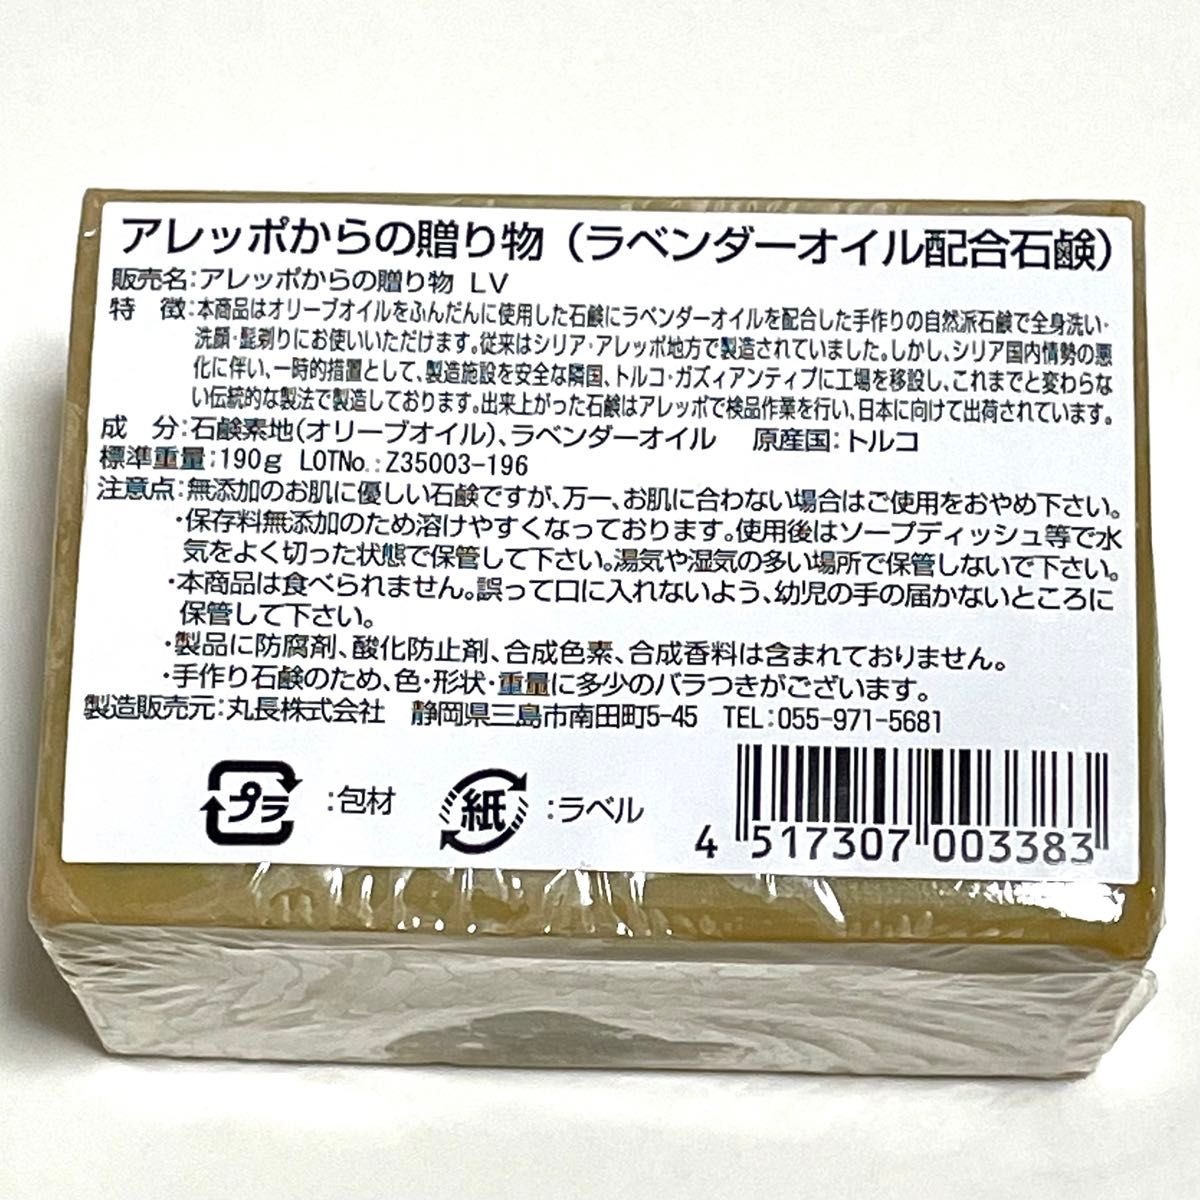 アレッポからの贈り物 ピュアオリーブオイル石鹸/ラベンダーオイル石鹸9つセット